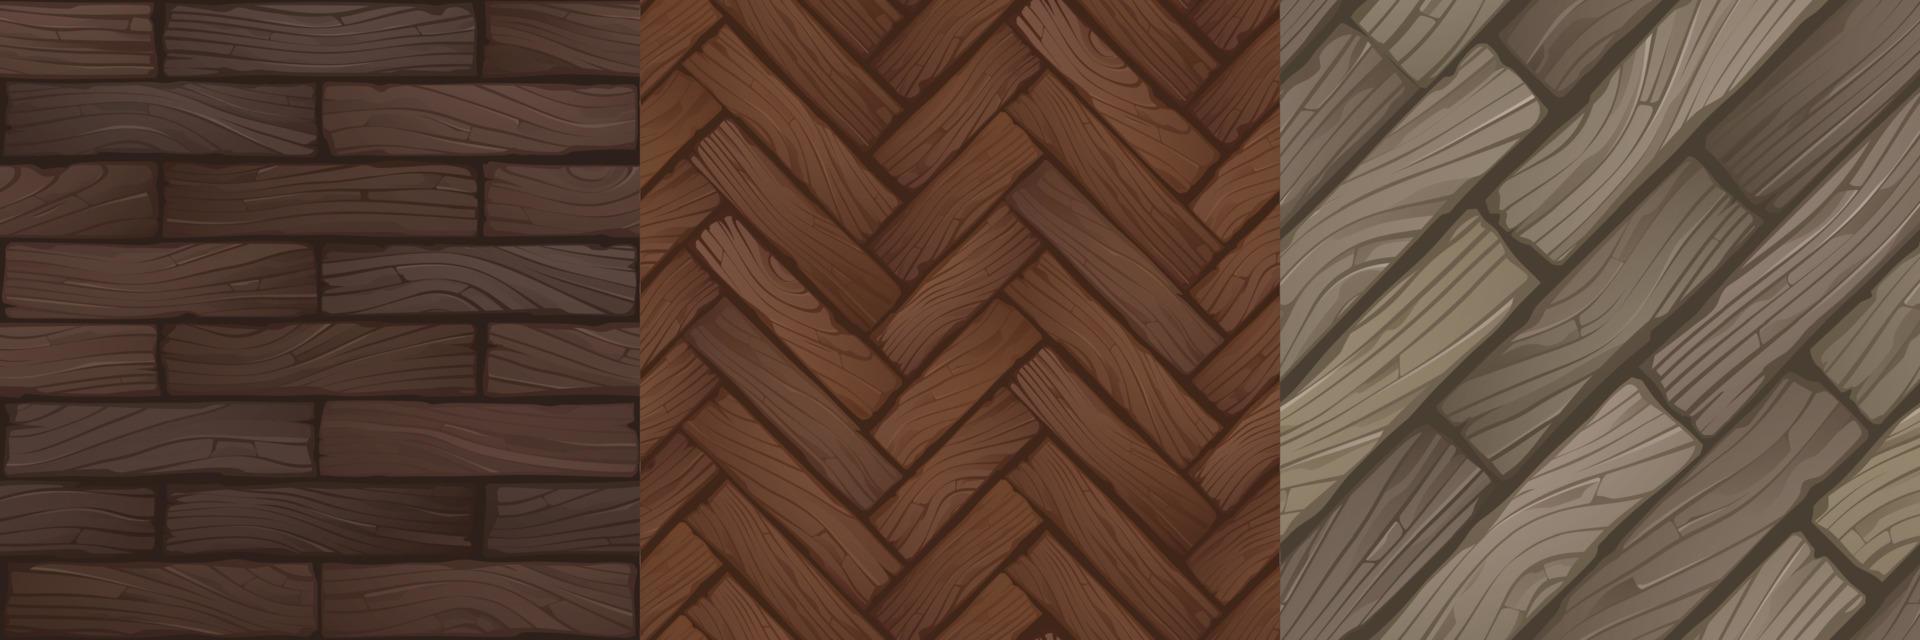 Textures of wood parquet, wooden flooring vector